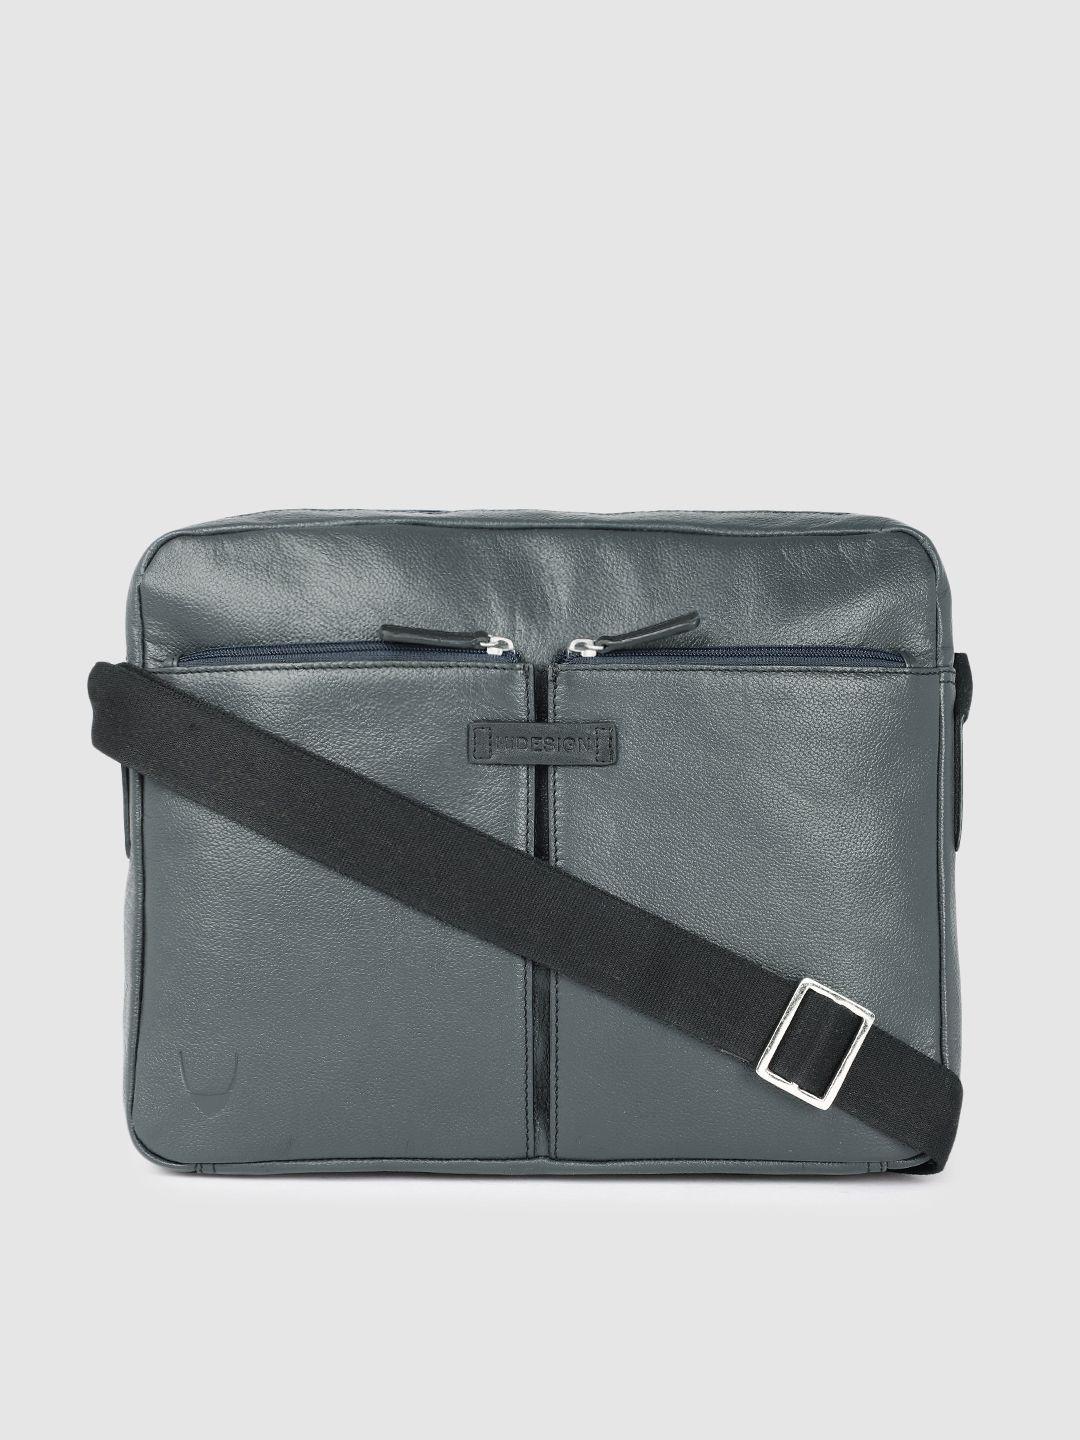 hidesign men navy blue solid leather laptop bag